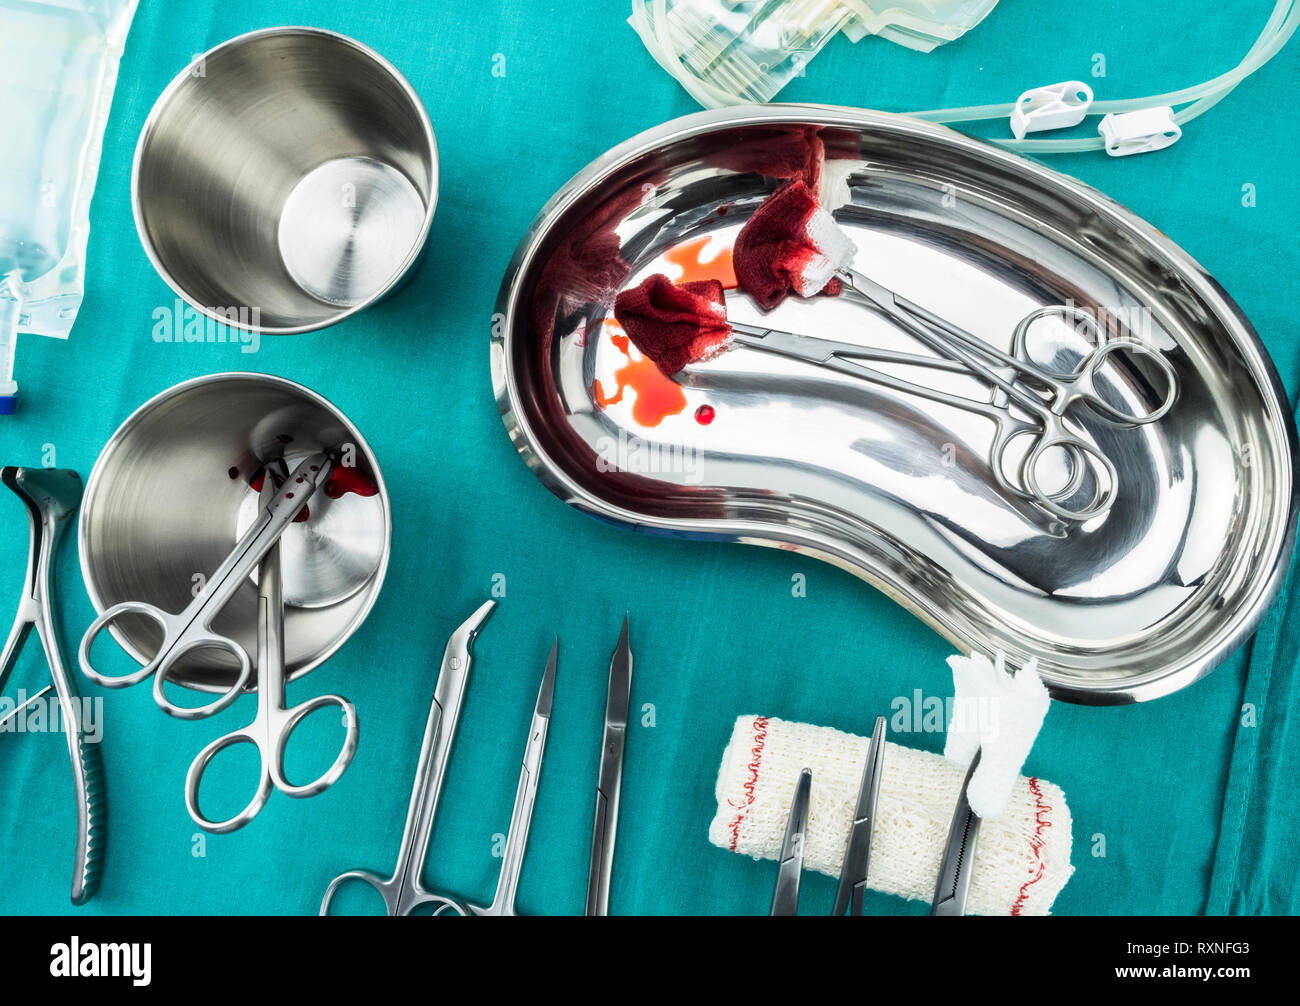 Chirurgie ciseaux avec torundas imbibé de sang sur un plateau métal dans une salle d'opération, la composition horizontale, conceptual image Banque D'Images